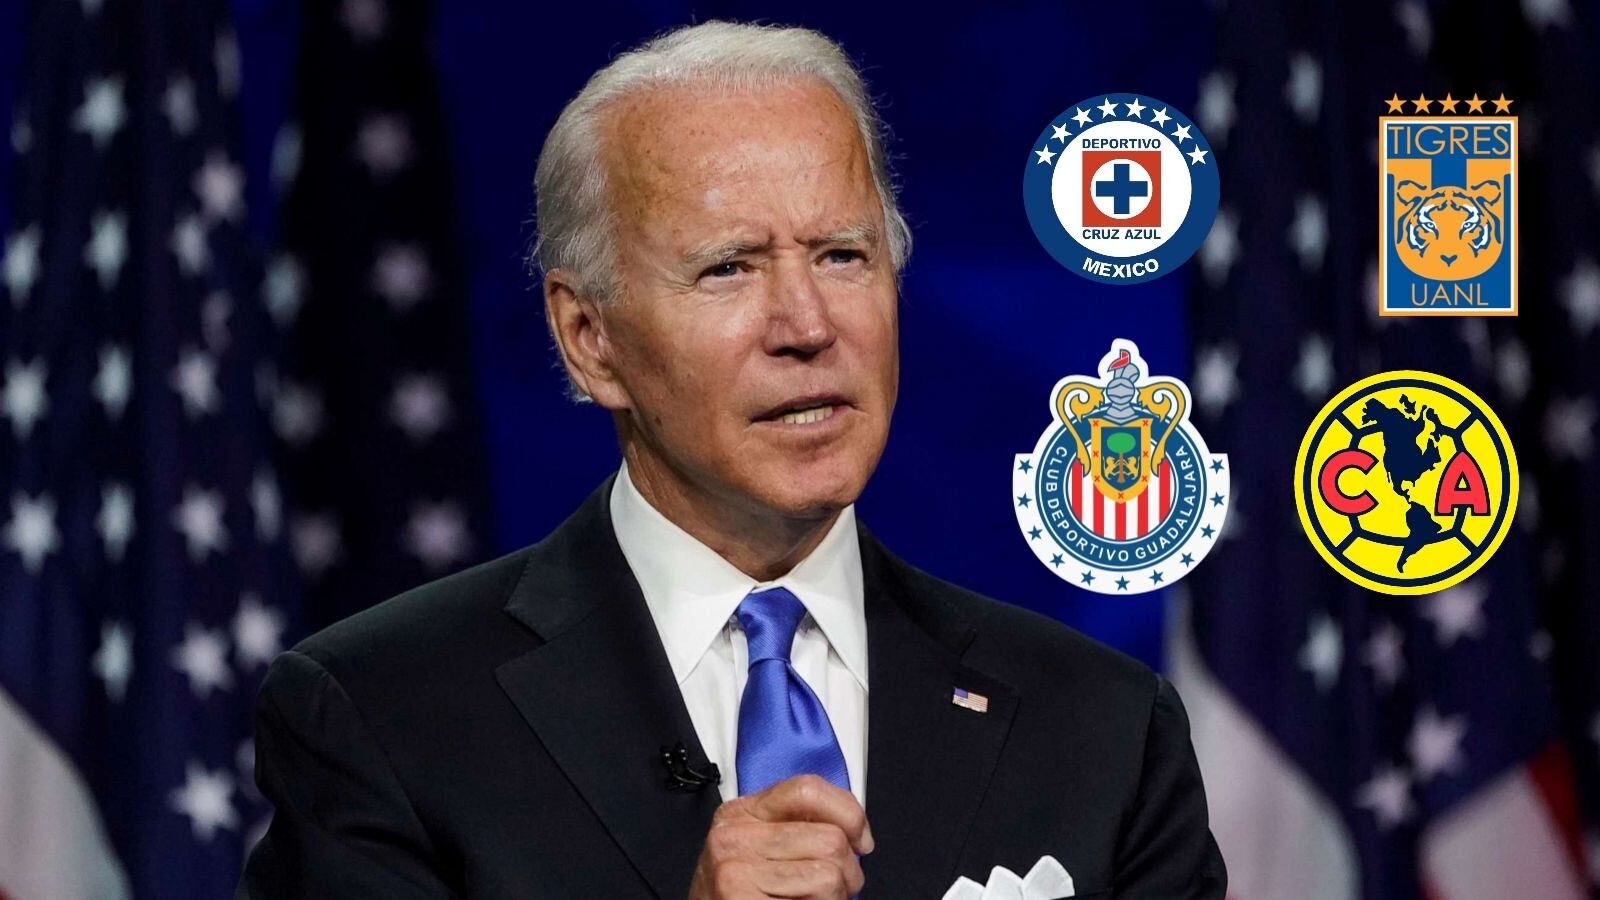 El gran beneficio que traería a la Liga MX si Joe Biden gana las elecciones